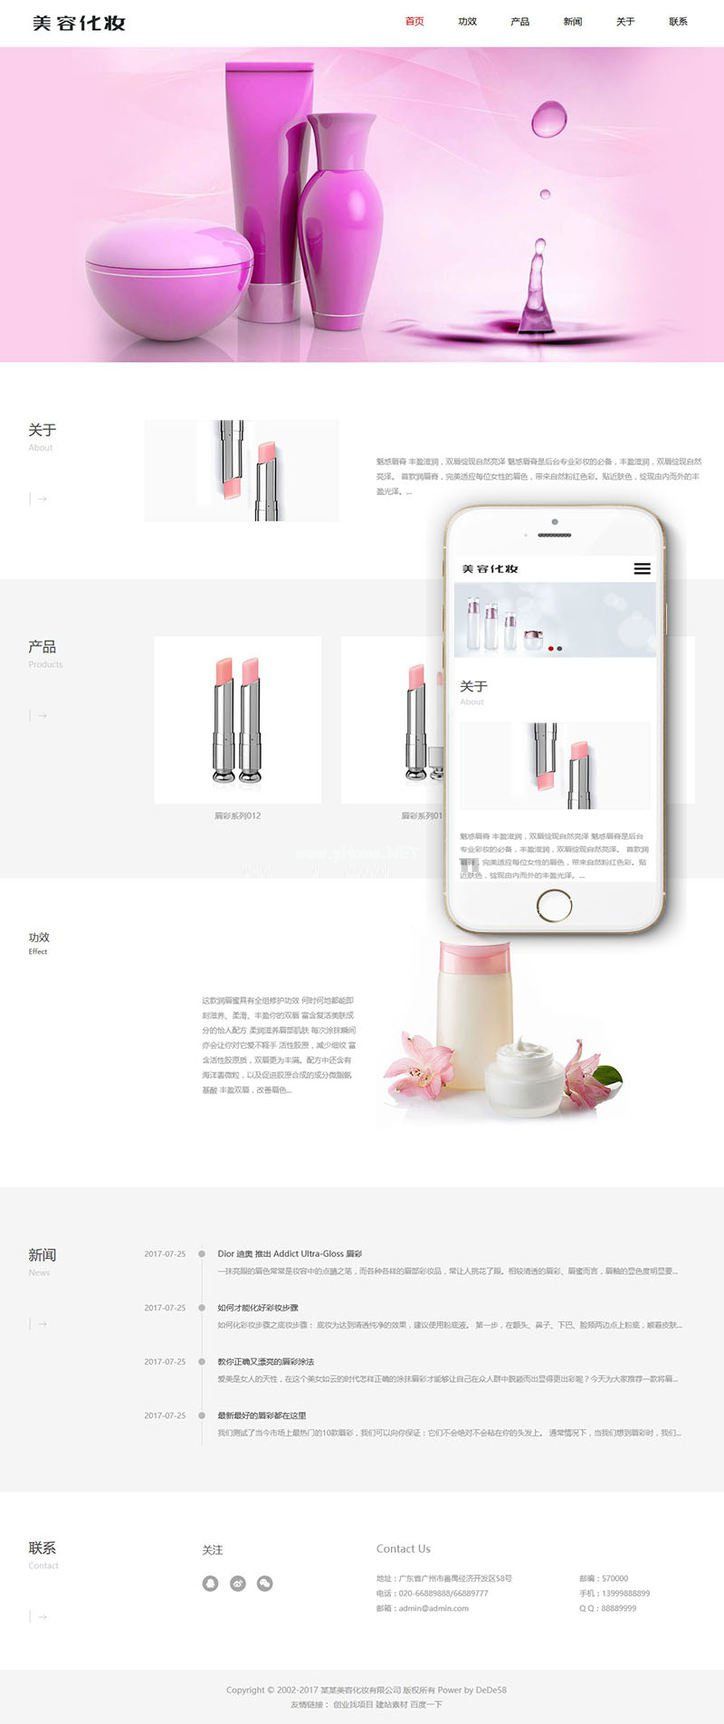     响应式唇膏美容化妆品公司网站源码 织梦dedecms模板(自适应手机移动端)
